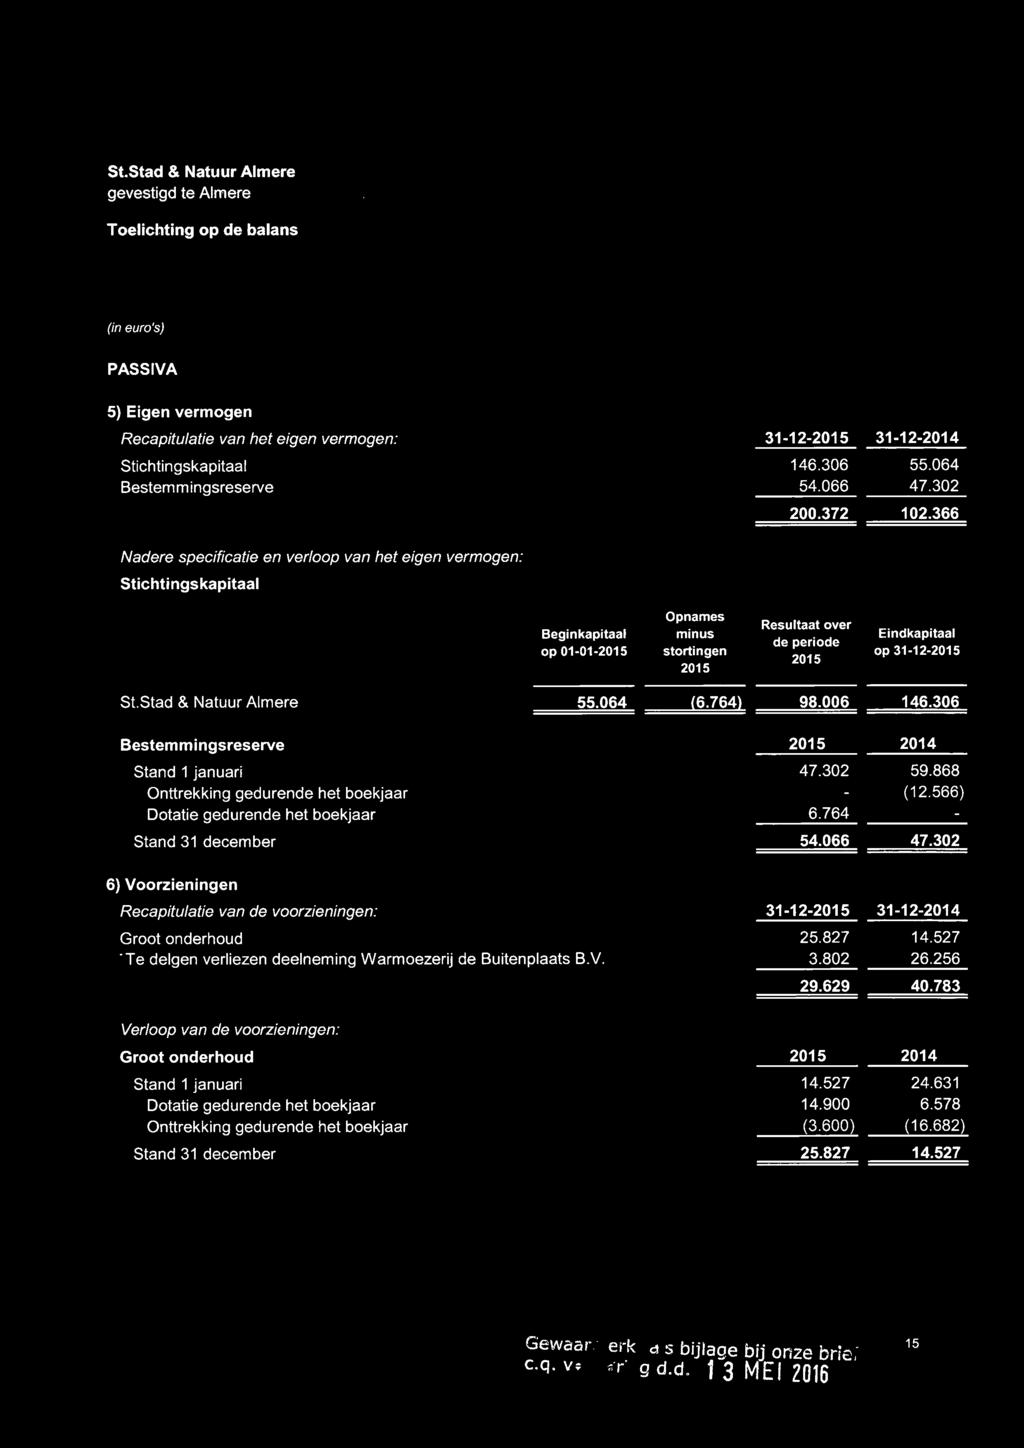 Stad & Natuur Almere 55.064 (6.764) 98.006 146.306 Bestemmingsreserve Stand 1 januari Onttrekking gedurende het boekjaar Dotatie gedurende het boekjaar Stand 31 december 2015 2014 47.302 59.868 (12.